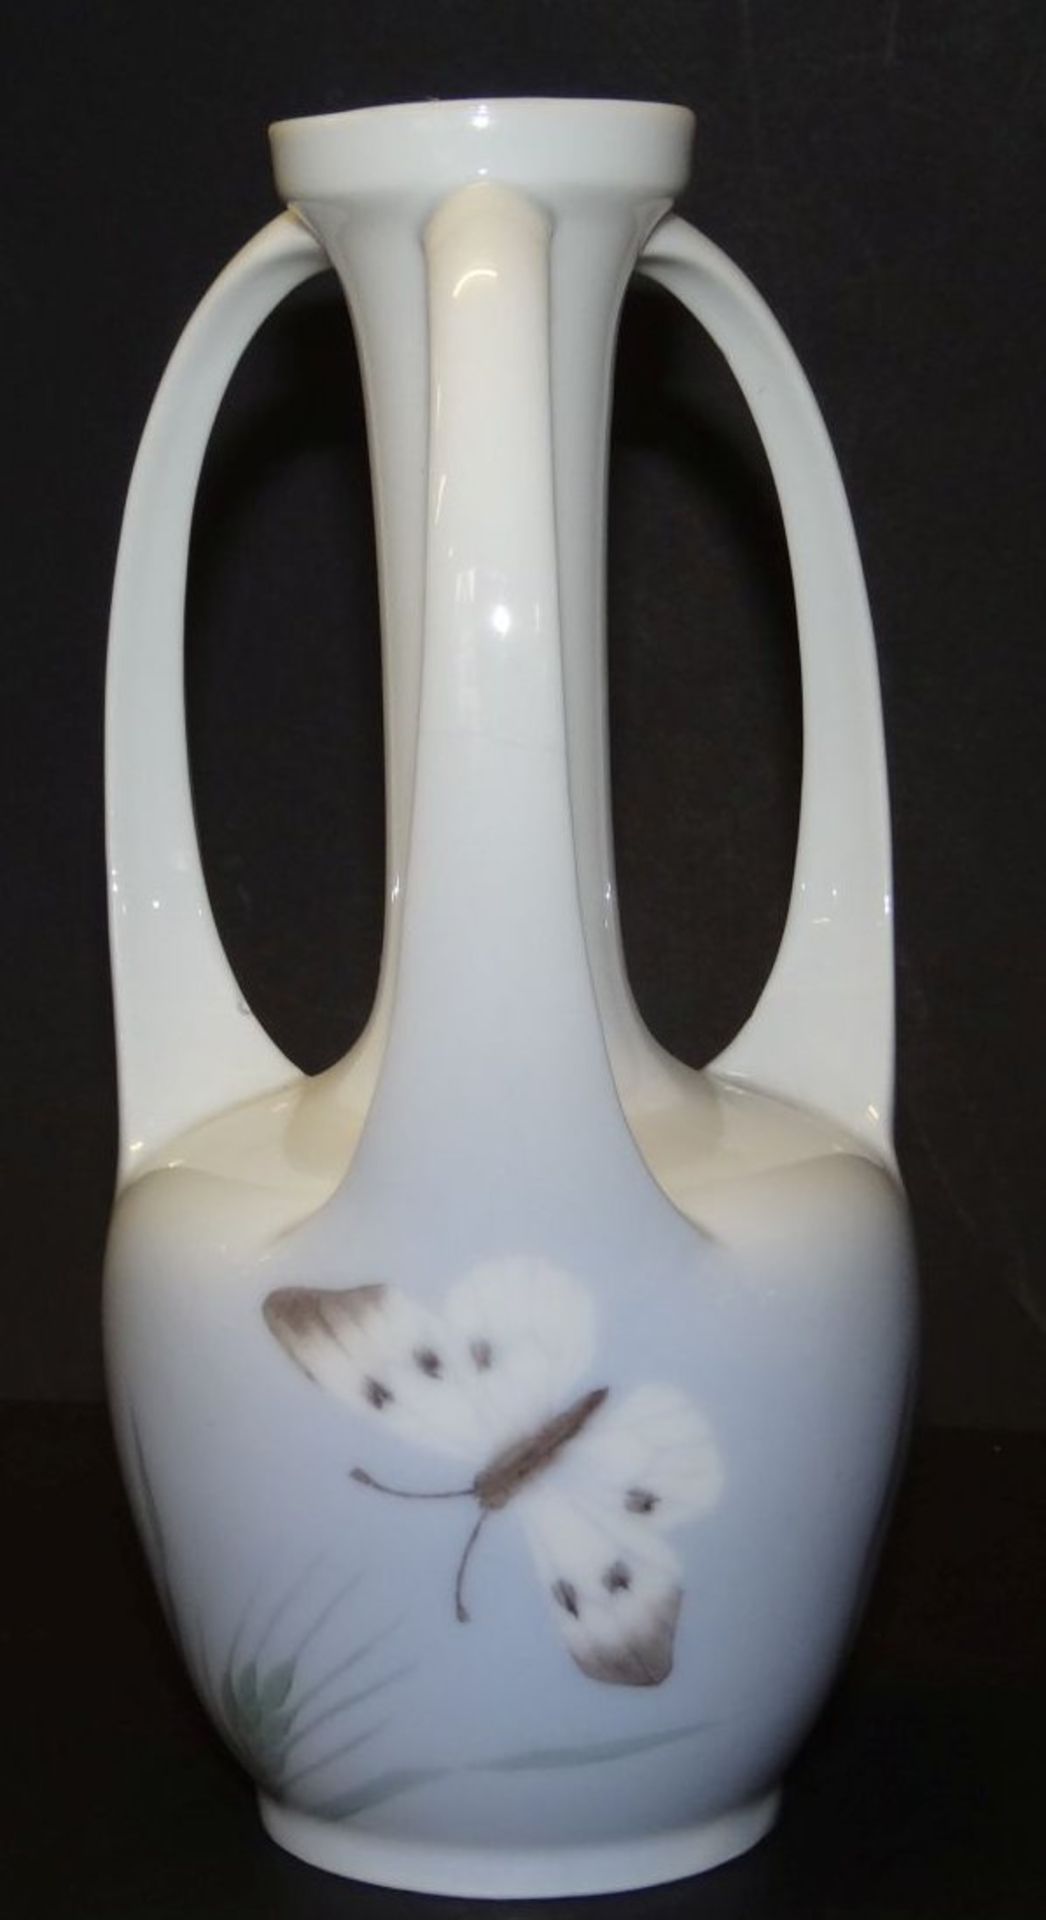 Jugendstil-Vase "Royal Copenhagen" bemalt mit Schmetterlingen, Hals mit feinen Altriss, H-17 cm - Bild 2 aus 6